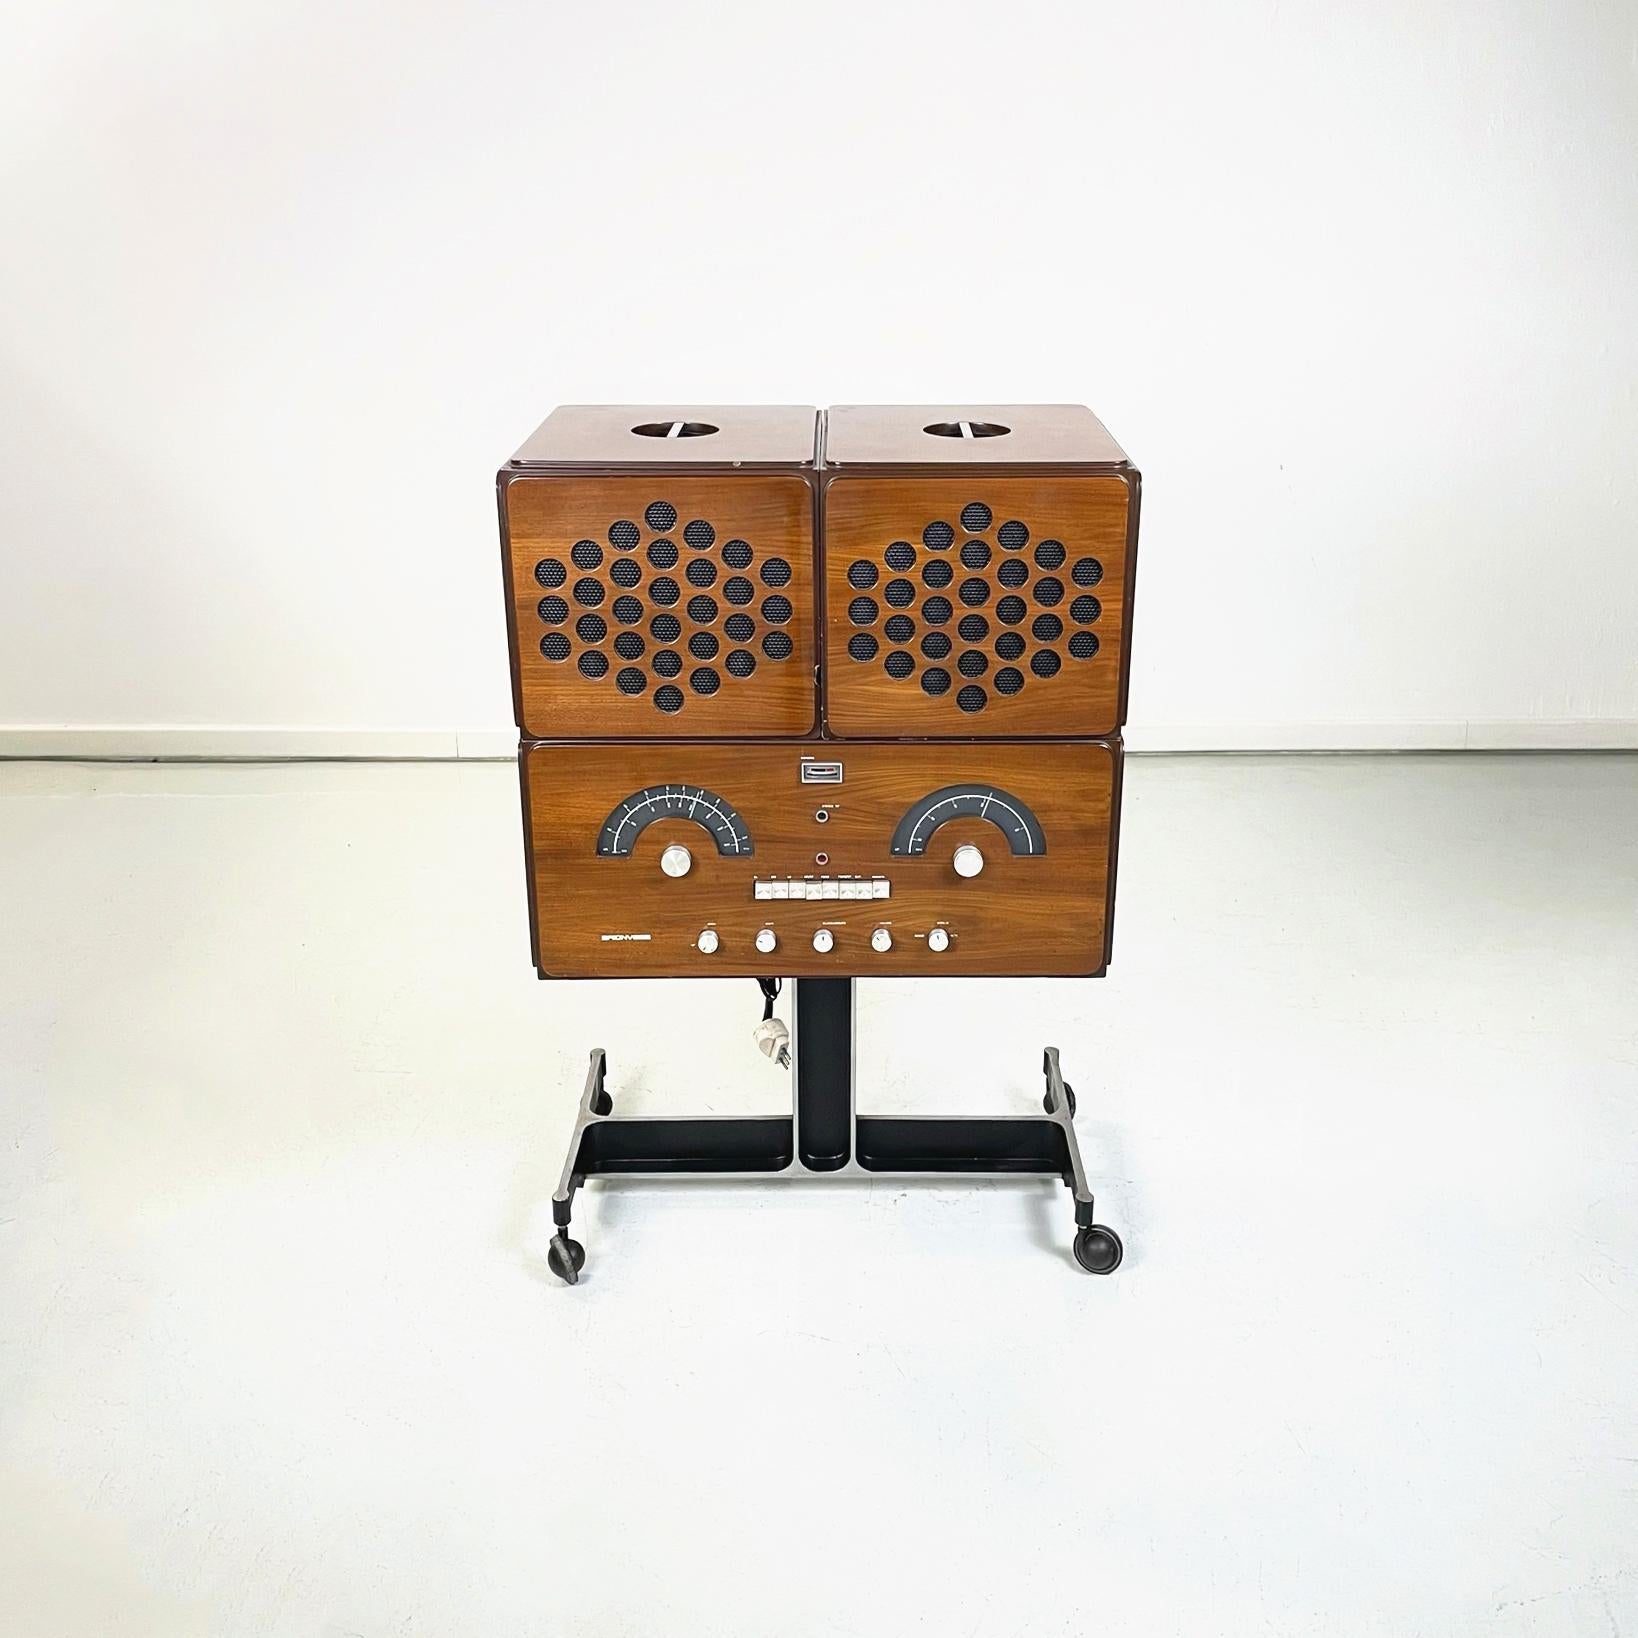 Moderner italienischer Radiophonograph RR126 und Plattenspieler von Castiglioni Brionvega, 1960er Jahre
Radiophonograph RR126 und Plattenspieler mit rechteckigem Sockel, aus Holz mit dunkelbraunen Profilen. Es gibt zwei Soundboxen, die oben oder an